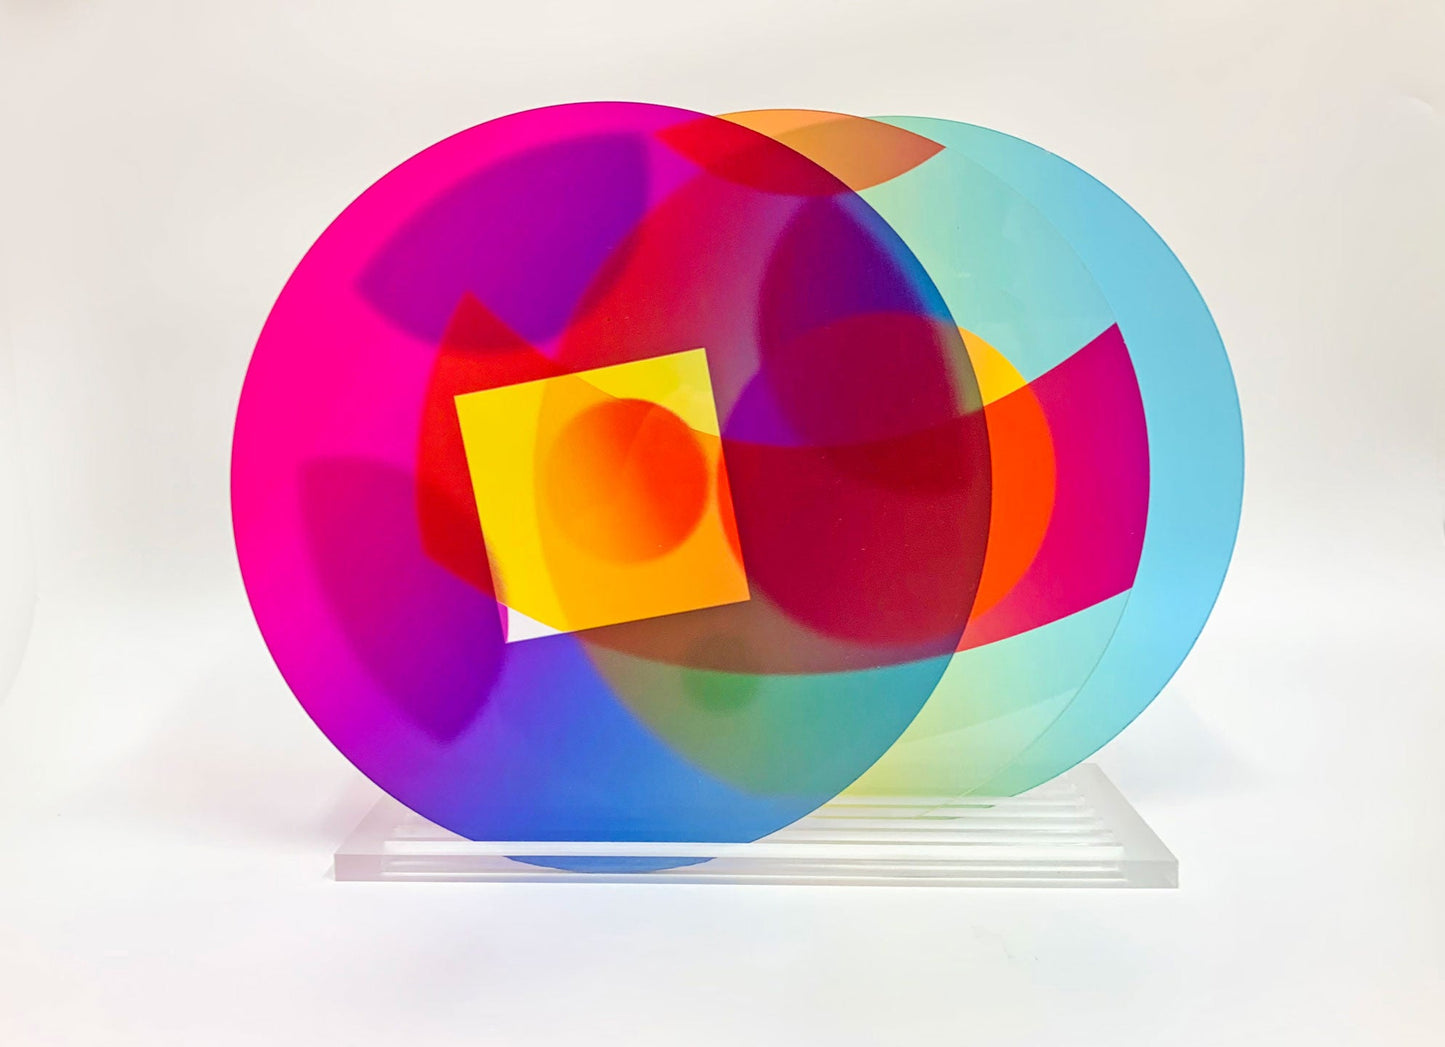 Modular translucent discs sculpture